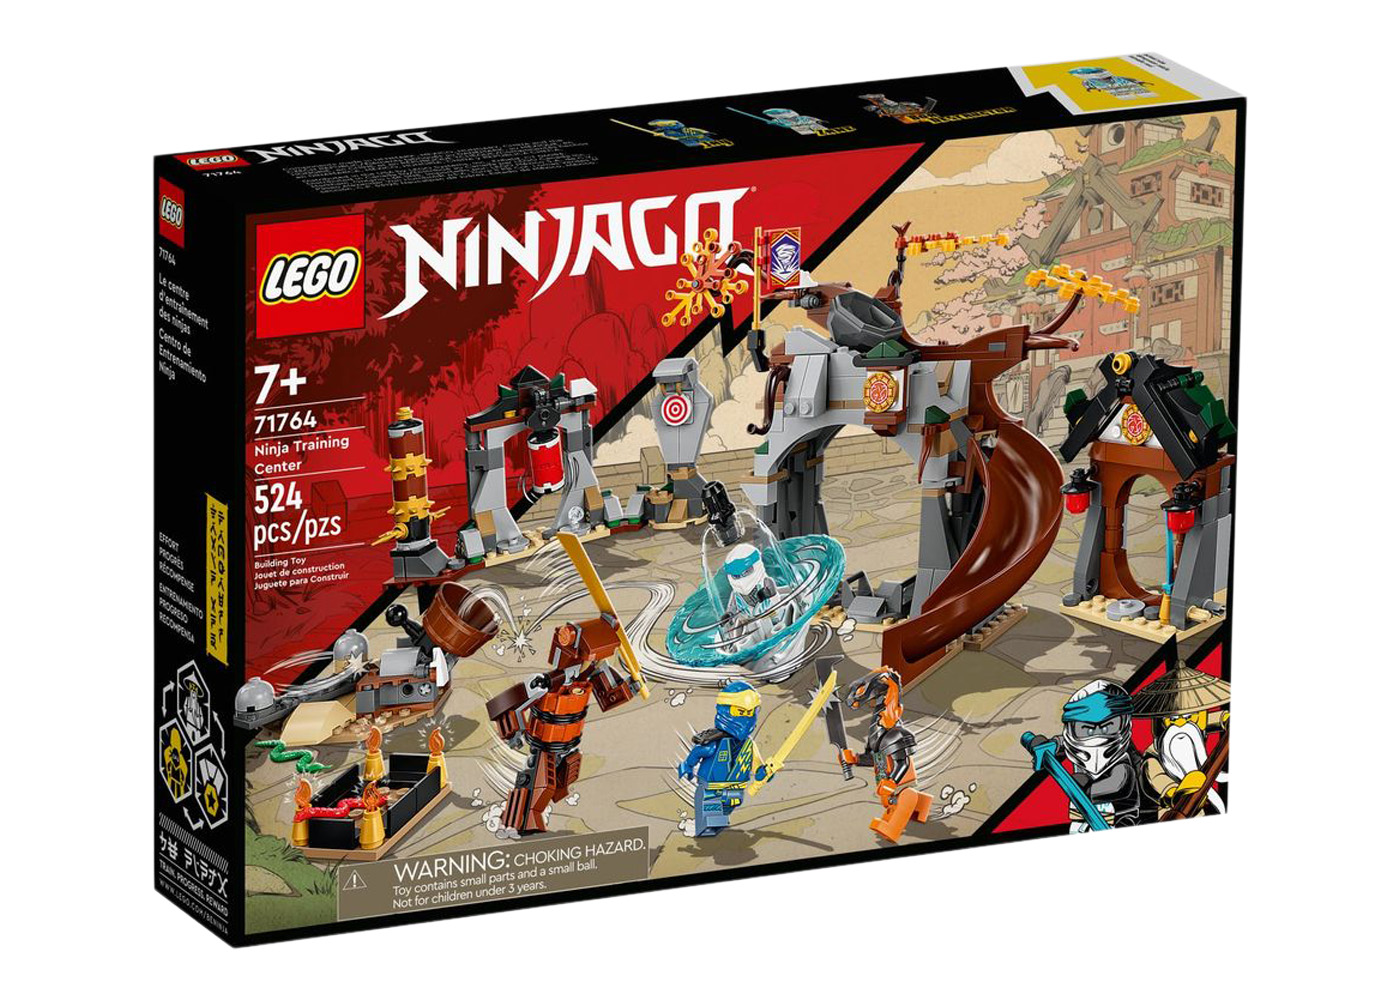 LEGO Ninjago Ninja Training Center Set 71764